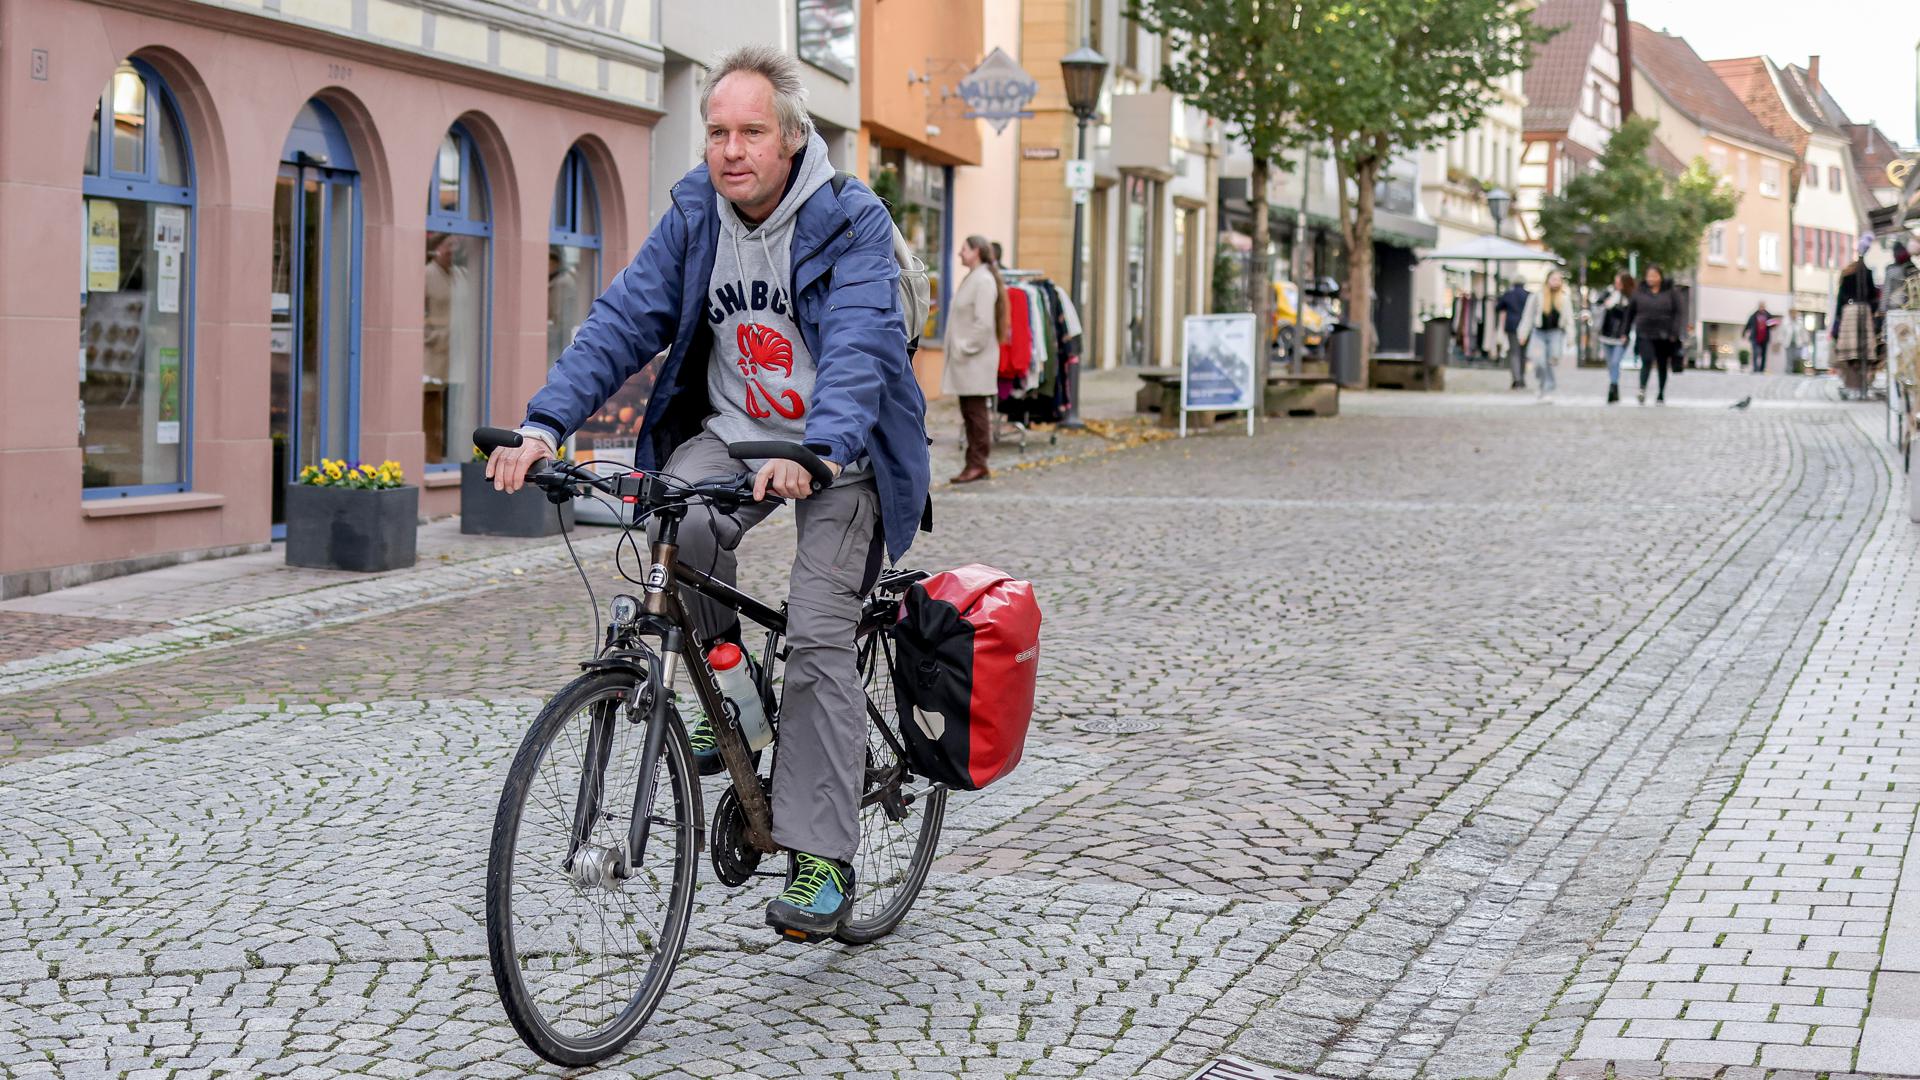 Für seine Fahrten nach Bretten nutzt der Freudensteiner Martin Baumgärtel fast ausschließlich das Fahrrad. Für größere Einkäufe hat er noch ein Mountainbike mit Anhänger.